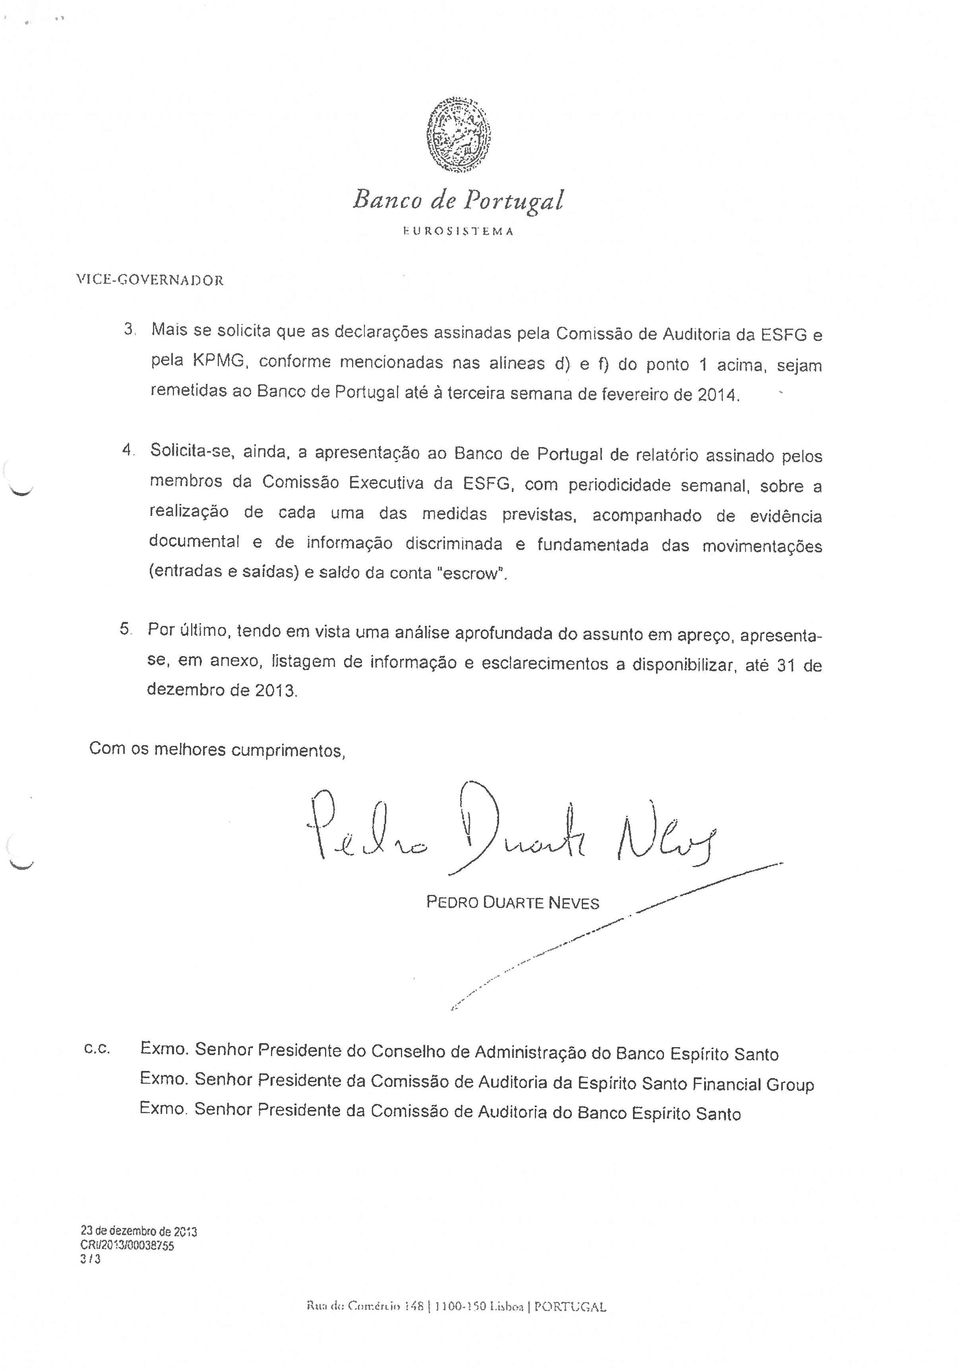 4, Solicita-se, ainda, a apresentaçào ao Banco de Portugal de reatoro assinado petos membros Us Comissâo Executiva da ESFG, corn periodckiade semanal, sabre a realizaçäo de cada urns das medidas